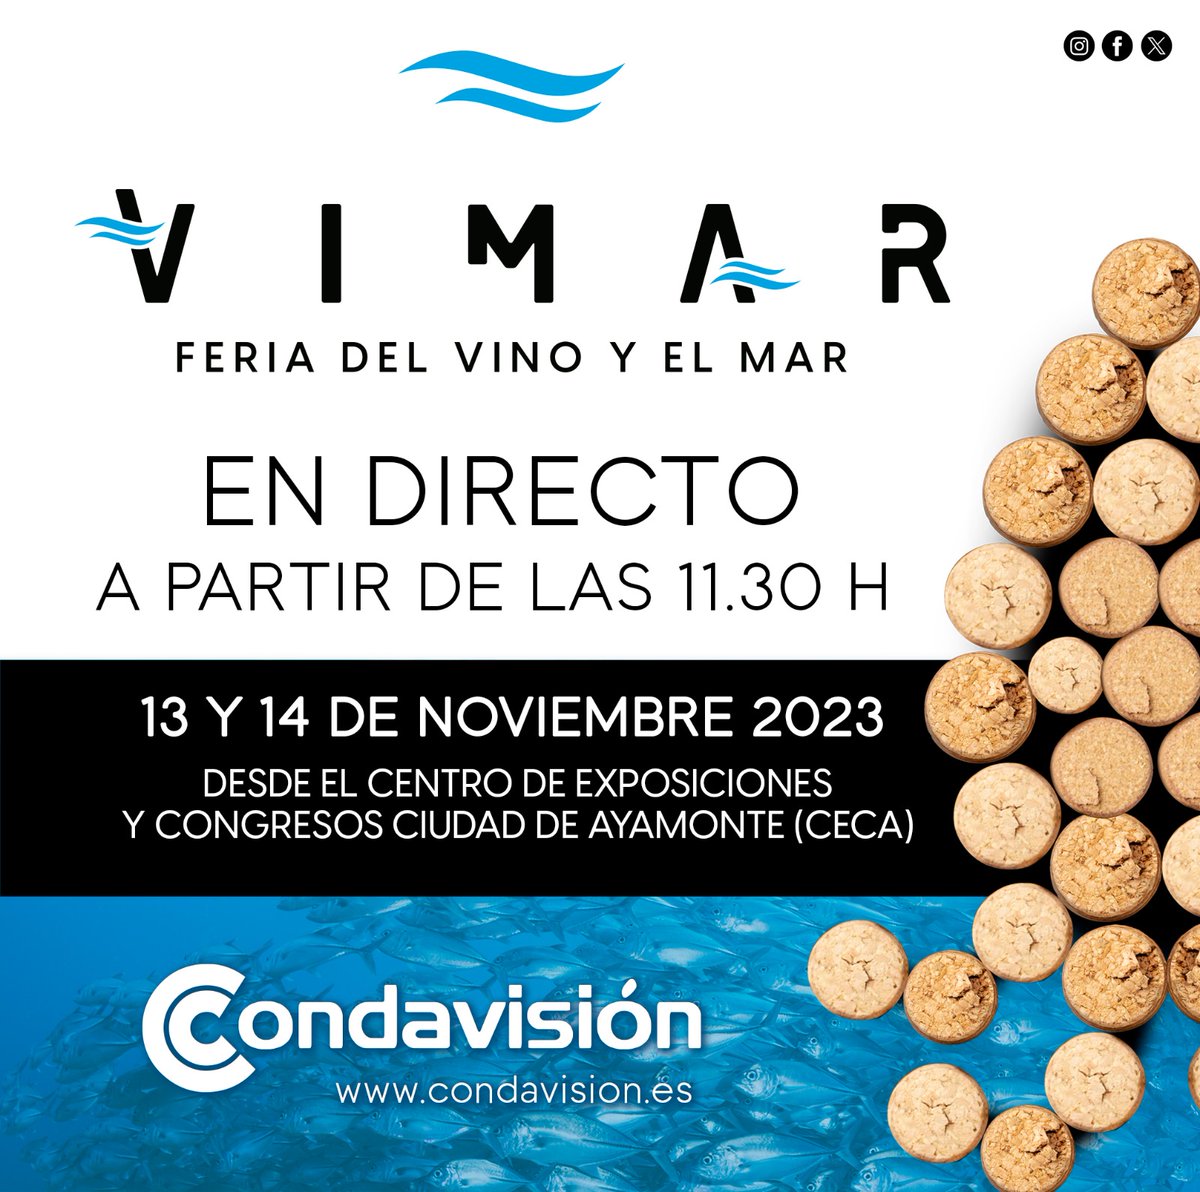 🌊🍷Condavisión te lleva a la II Edición de la Feria del Vino y el Mar, VIMAR.  A las 11:30, conectaremos desde el CECA 📺. 𝑬𝒏𝒕𝒓𝒆𝒗𝒊𝒔𝒕𝒂𝒔, 𝒆𝒏𝒄𝒖𝒆𝒏𝒕𝒓𝒐𝒔, 𝒔𝒉𝒐𝒘𝒄𝒐𝒐𝒌𝒊𝒏𝒈𝒔... y mucho más.

#GustodelSur #FEDER #AndalucíaSeMueveConEuropa #Vimar2023